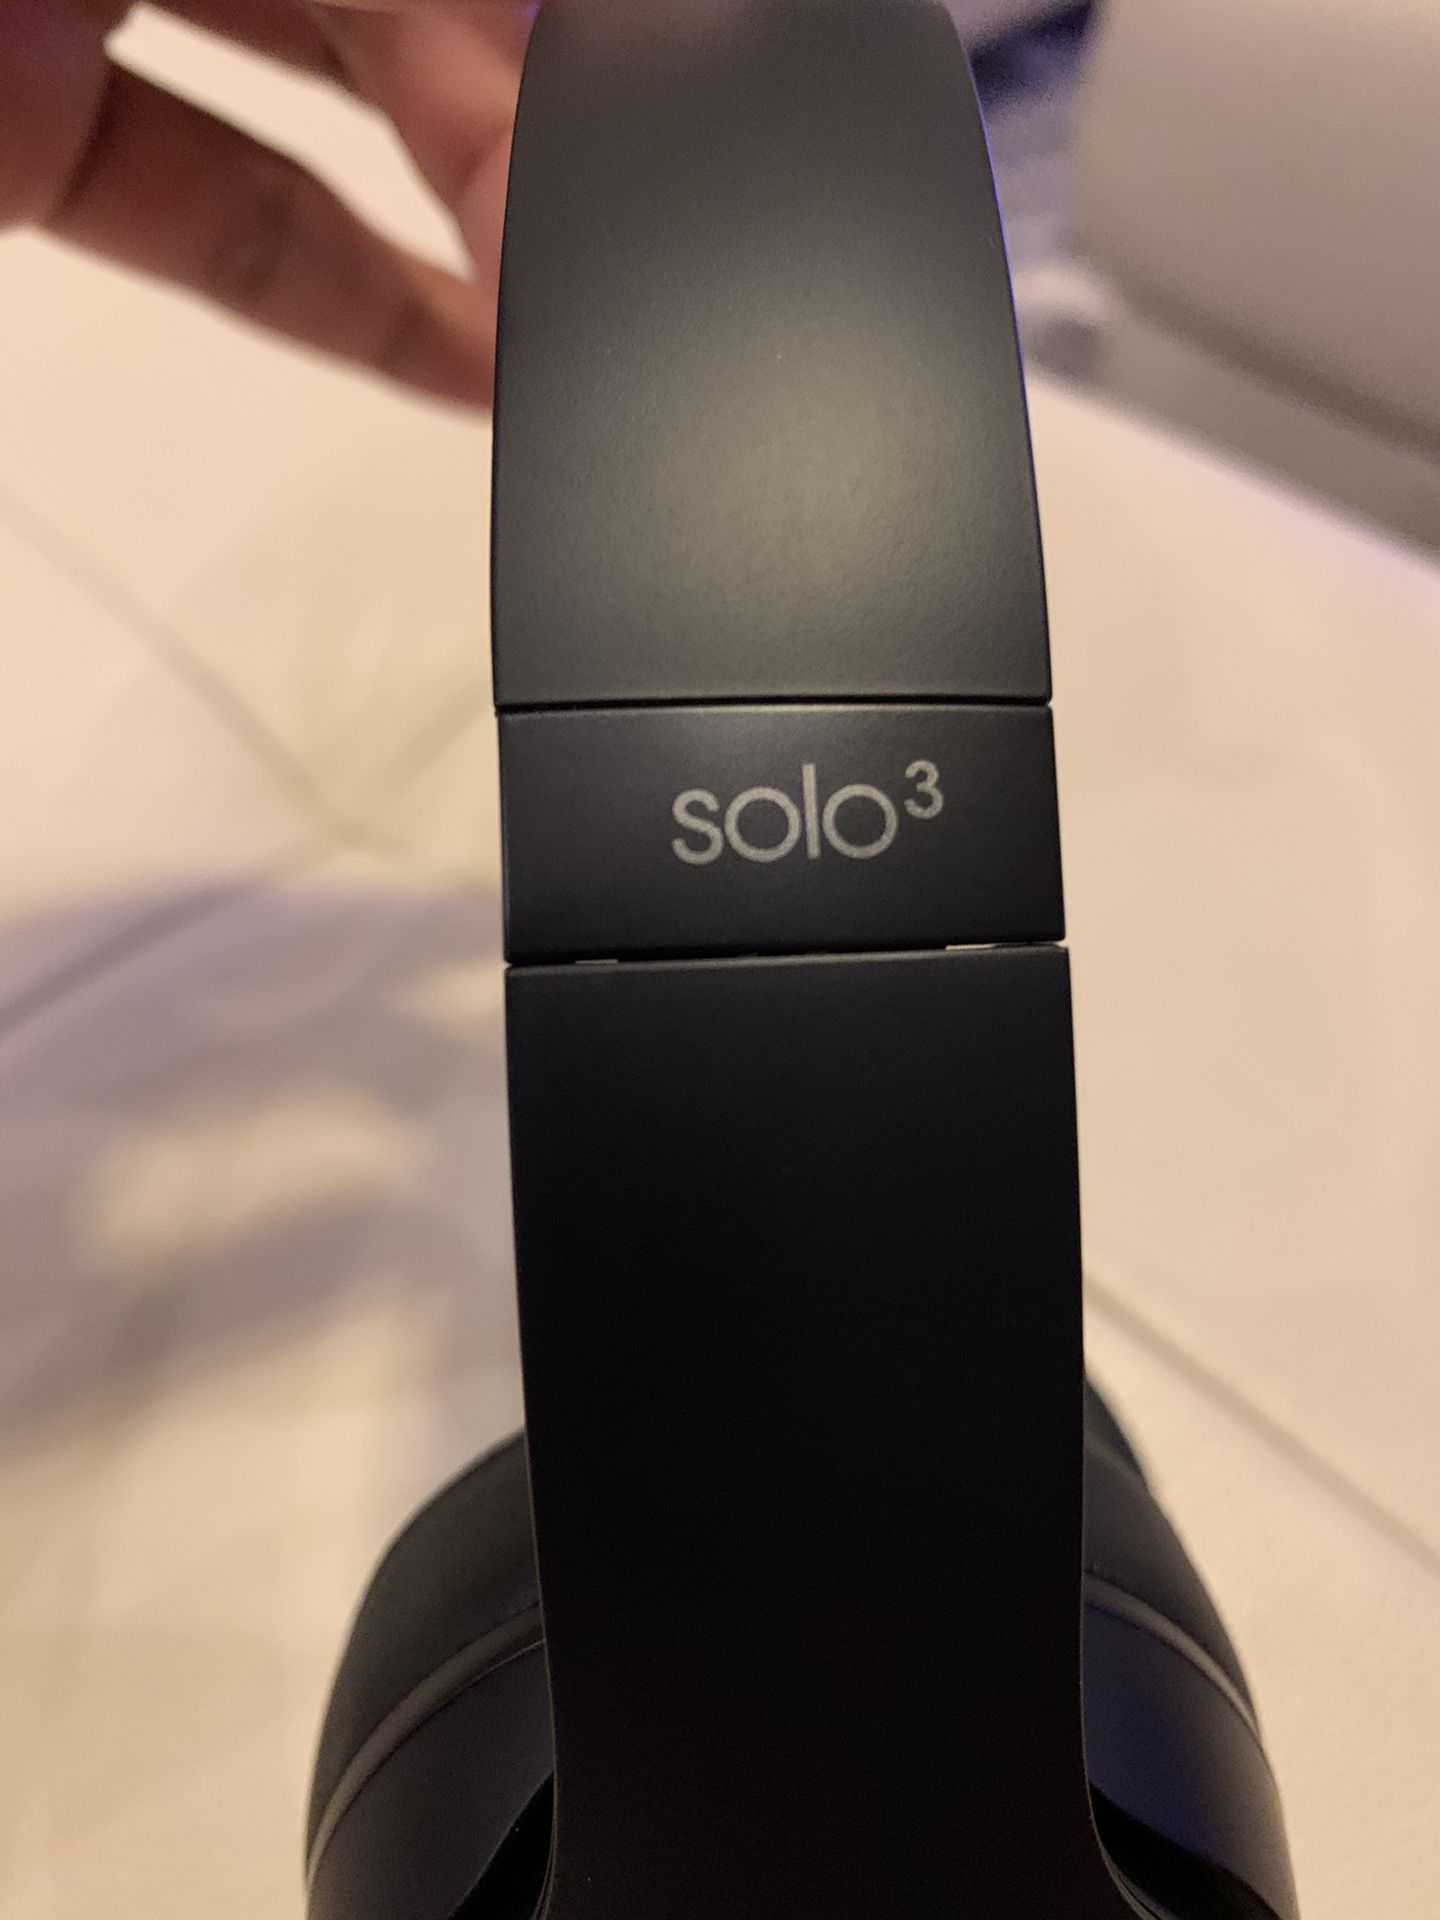 Beats Solo3 overear headphones